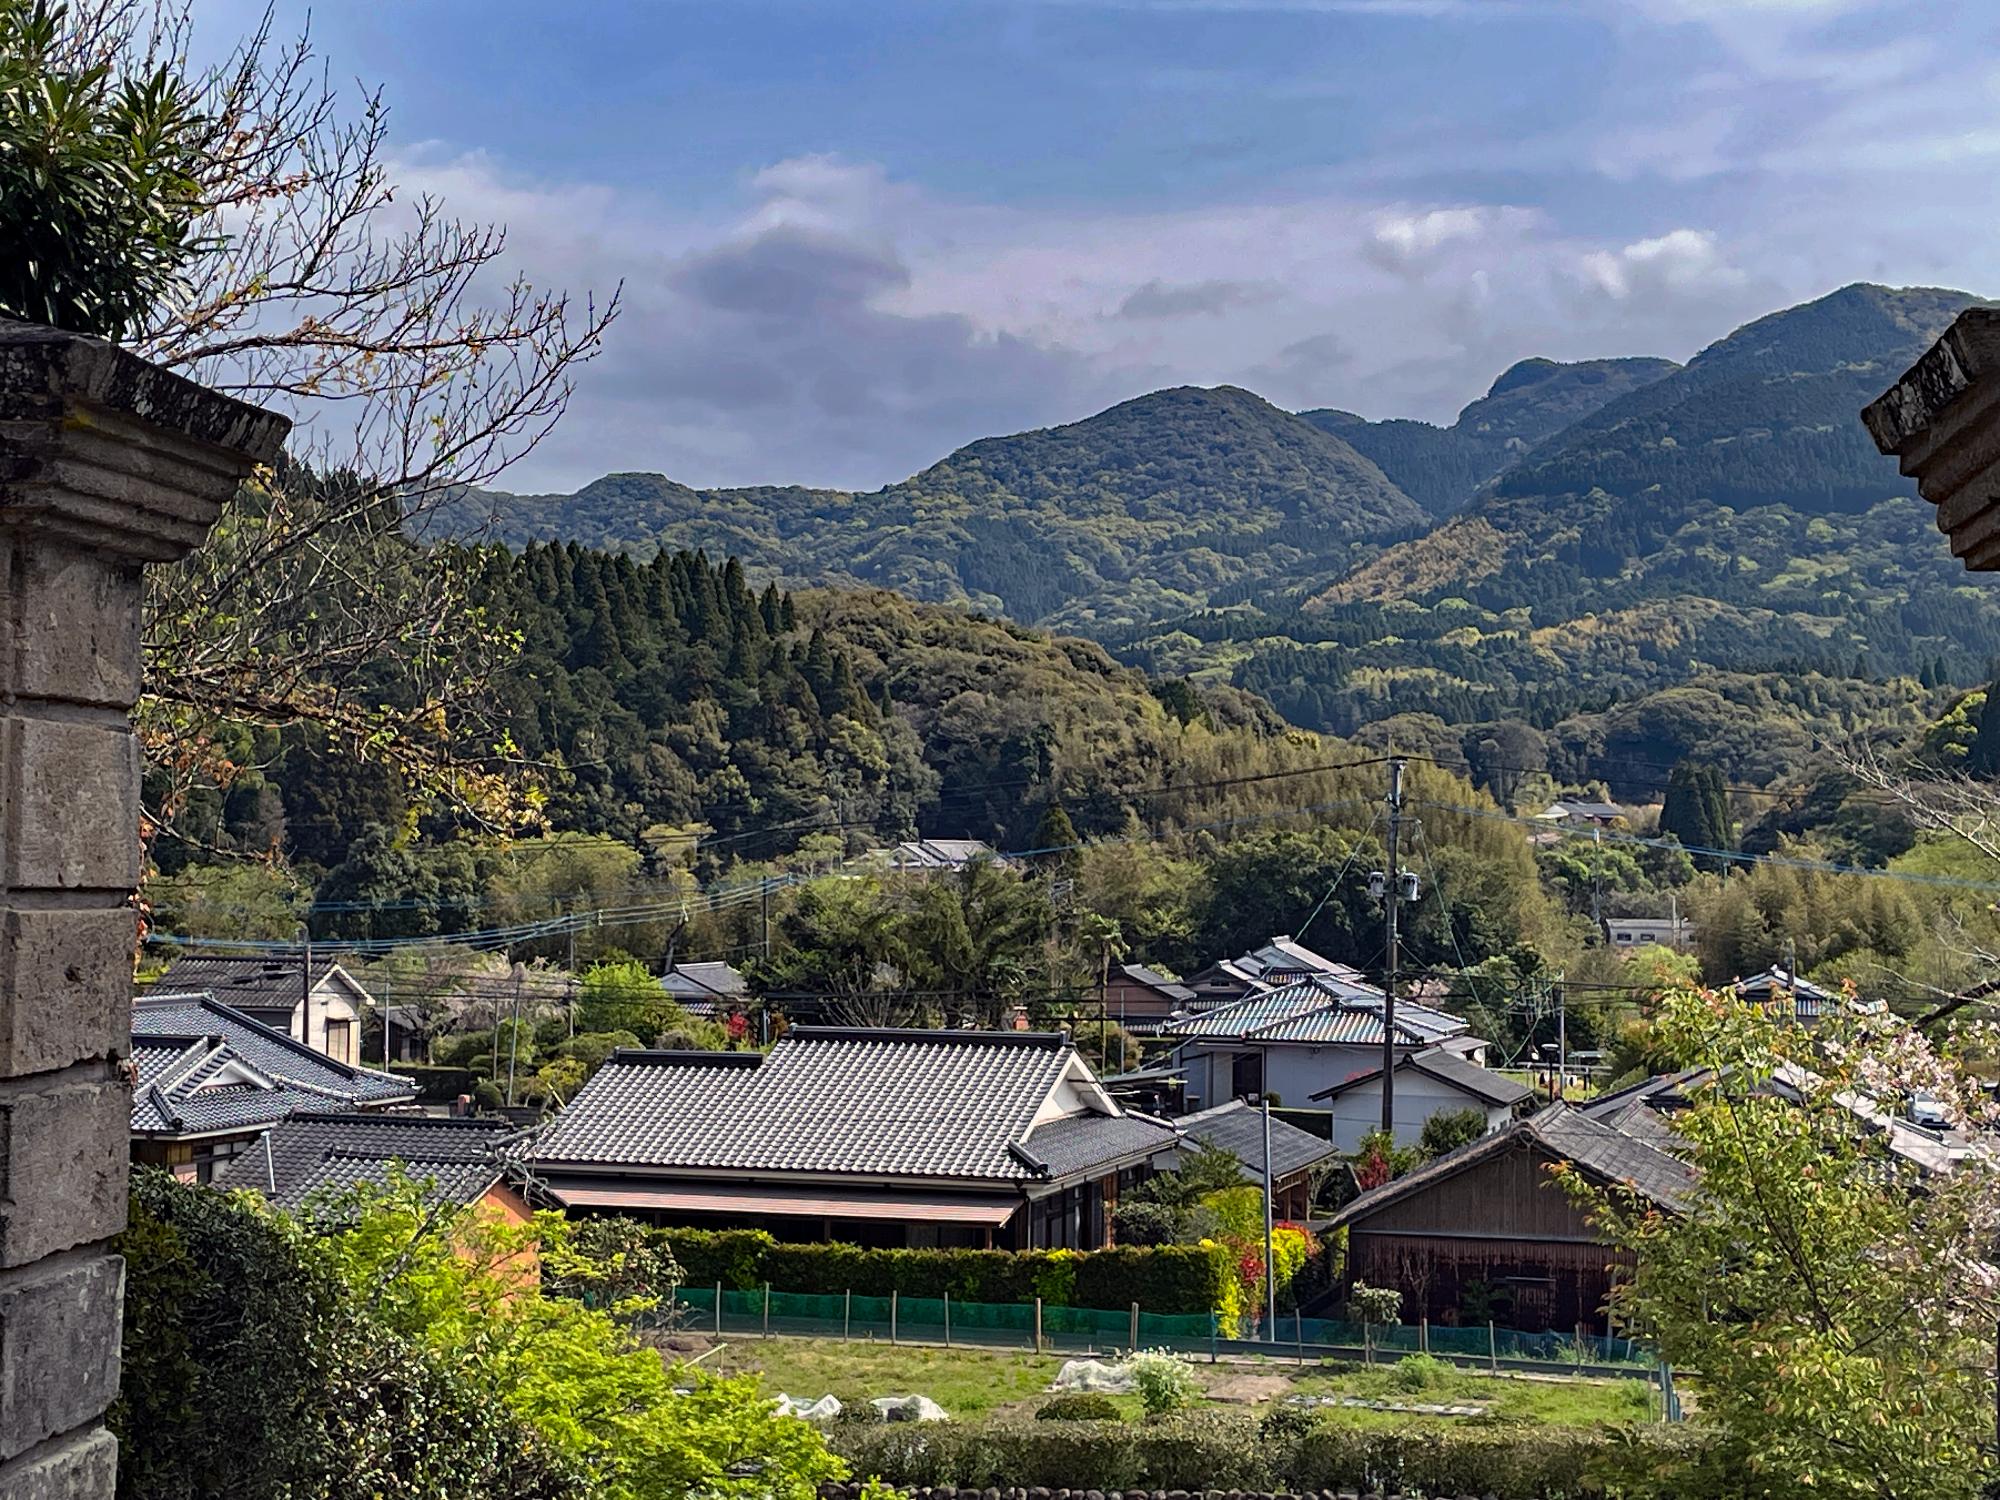 入来小学校から見る山の稜線が寝ている西郷さんに見える写真